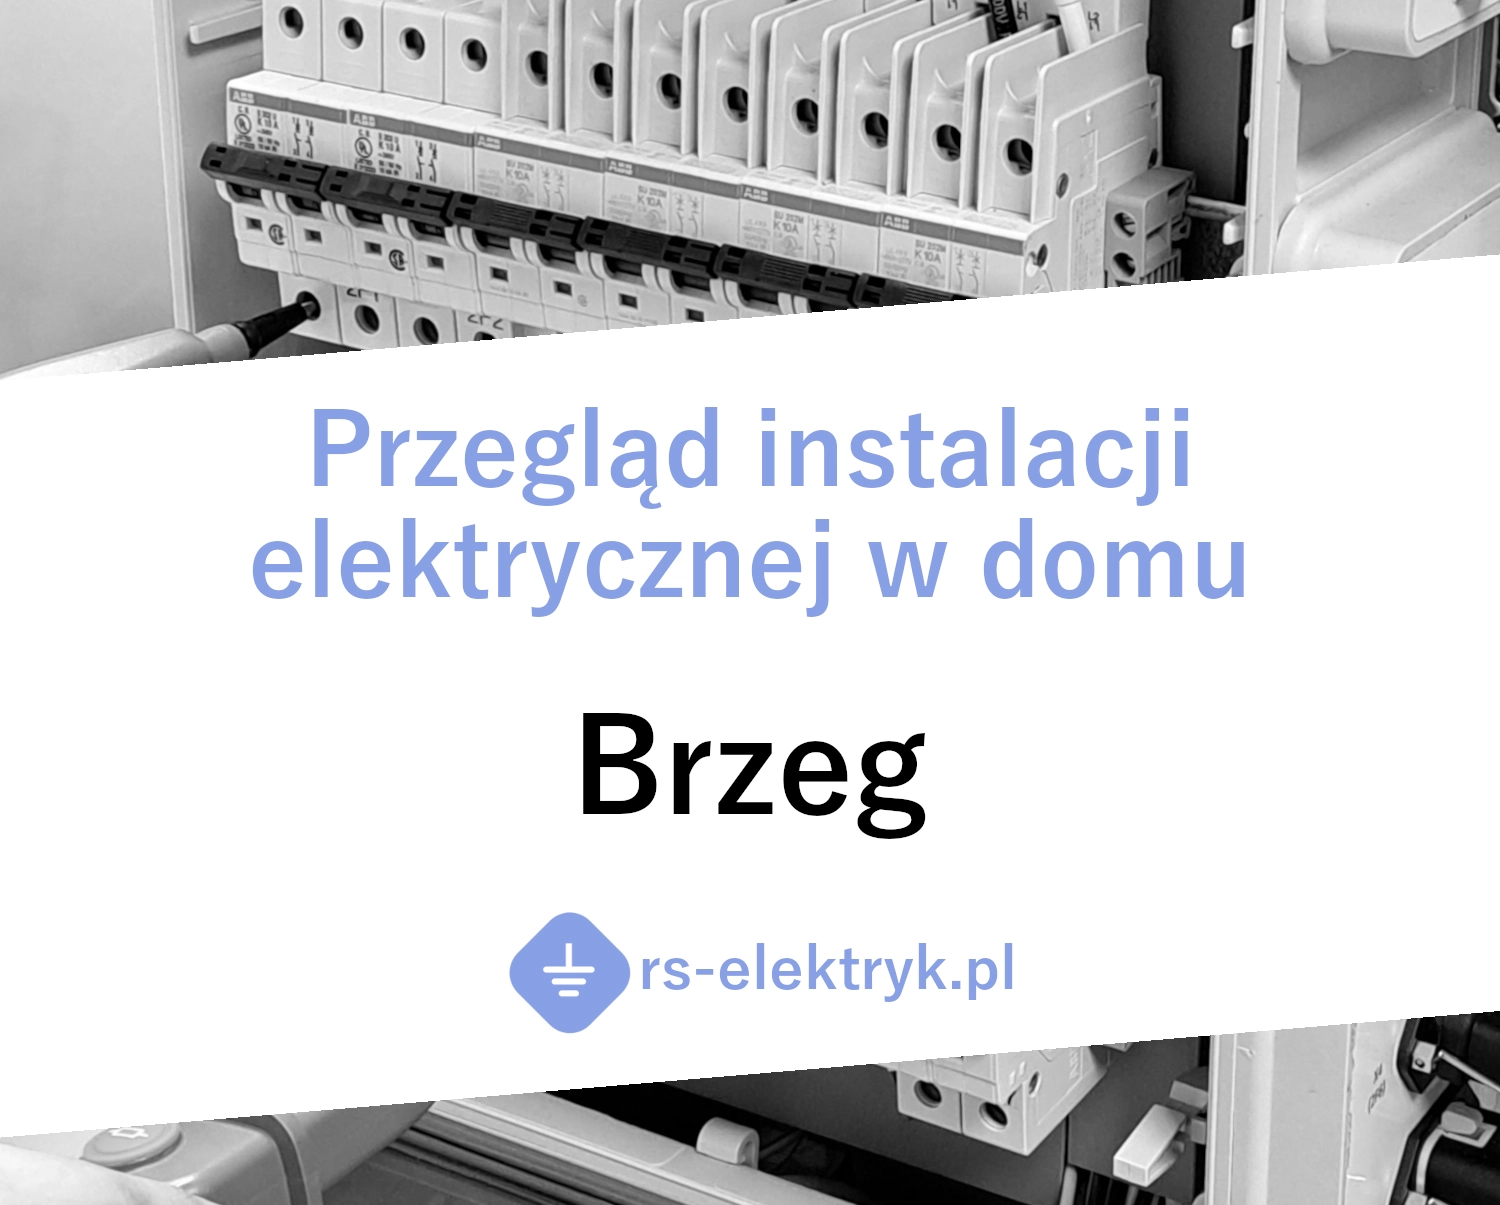 Przegląd instalacji elektrycznej w domu Brzeg